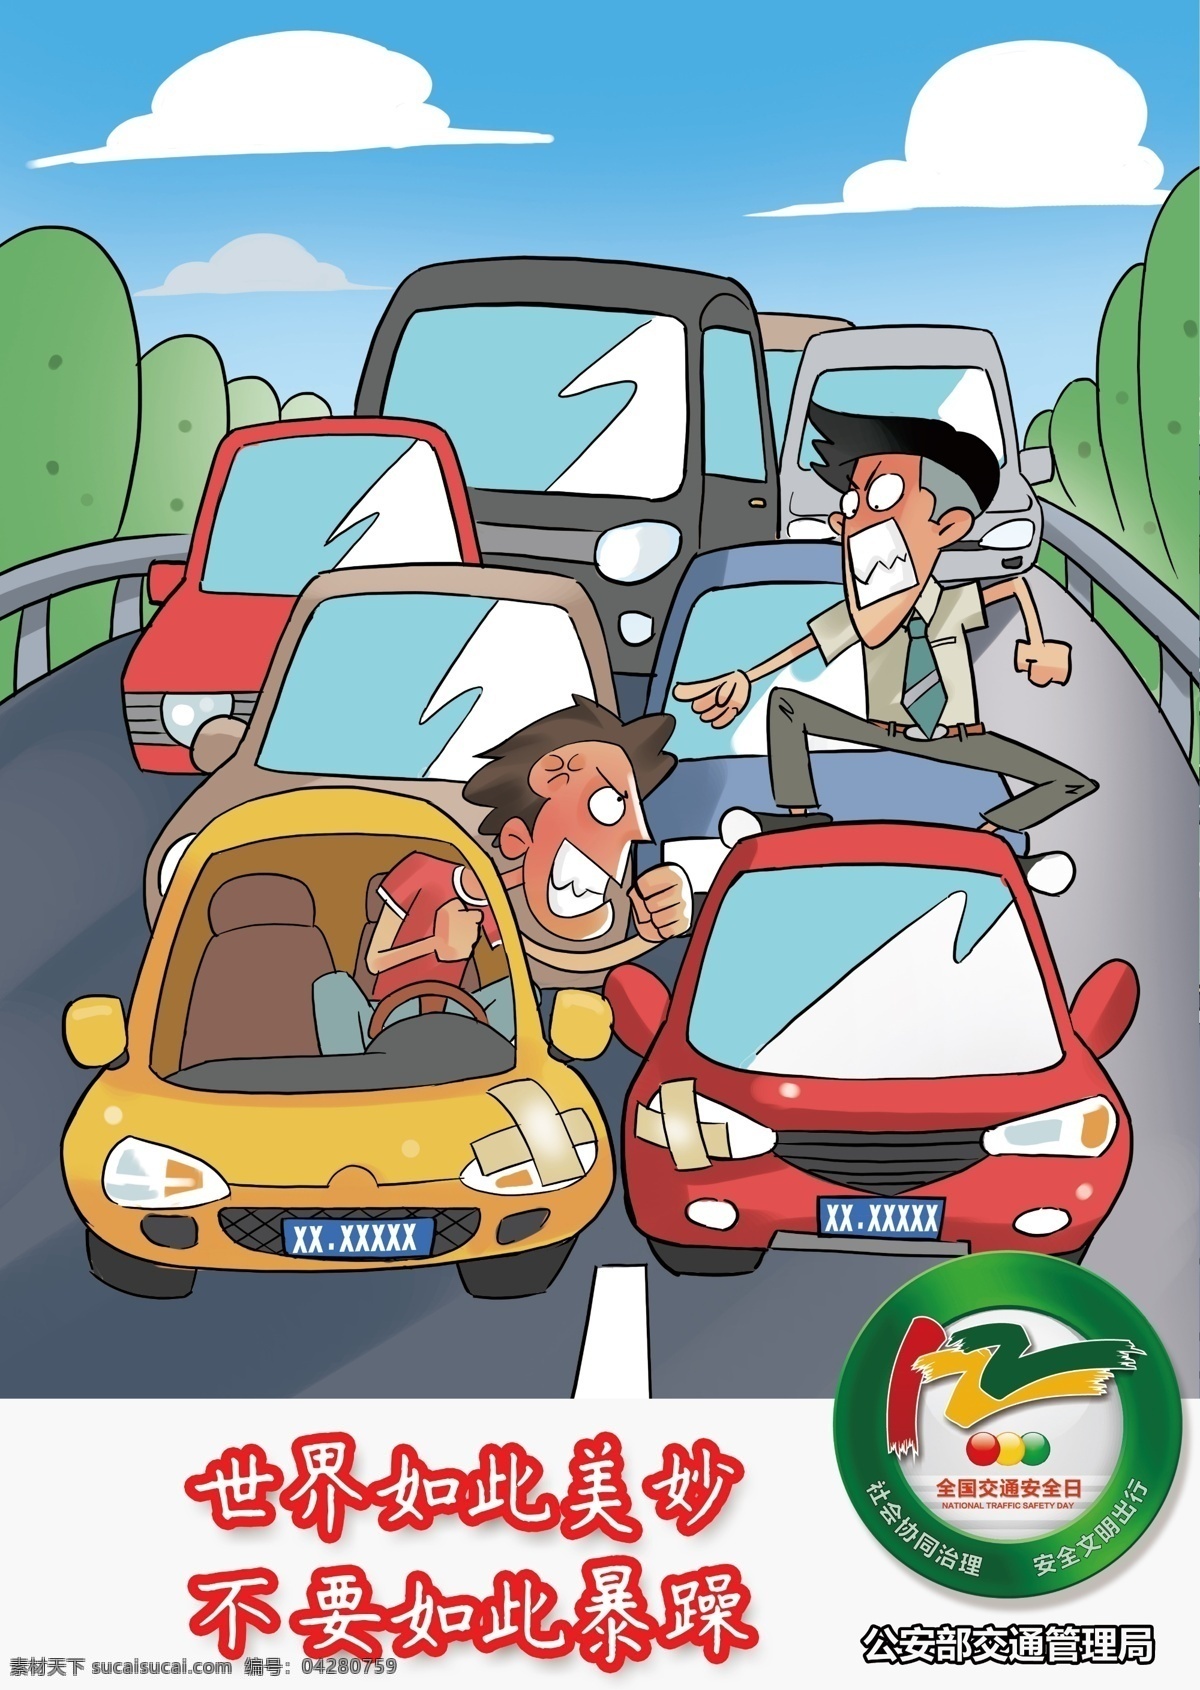 全国 交通 安 全日 交通安全日 交通宣传漫画 交通宣传 交通漫画